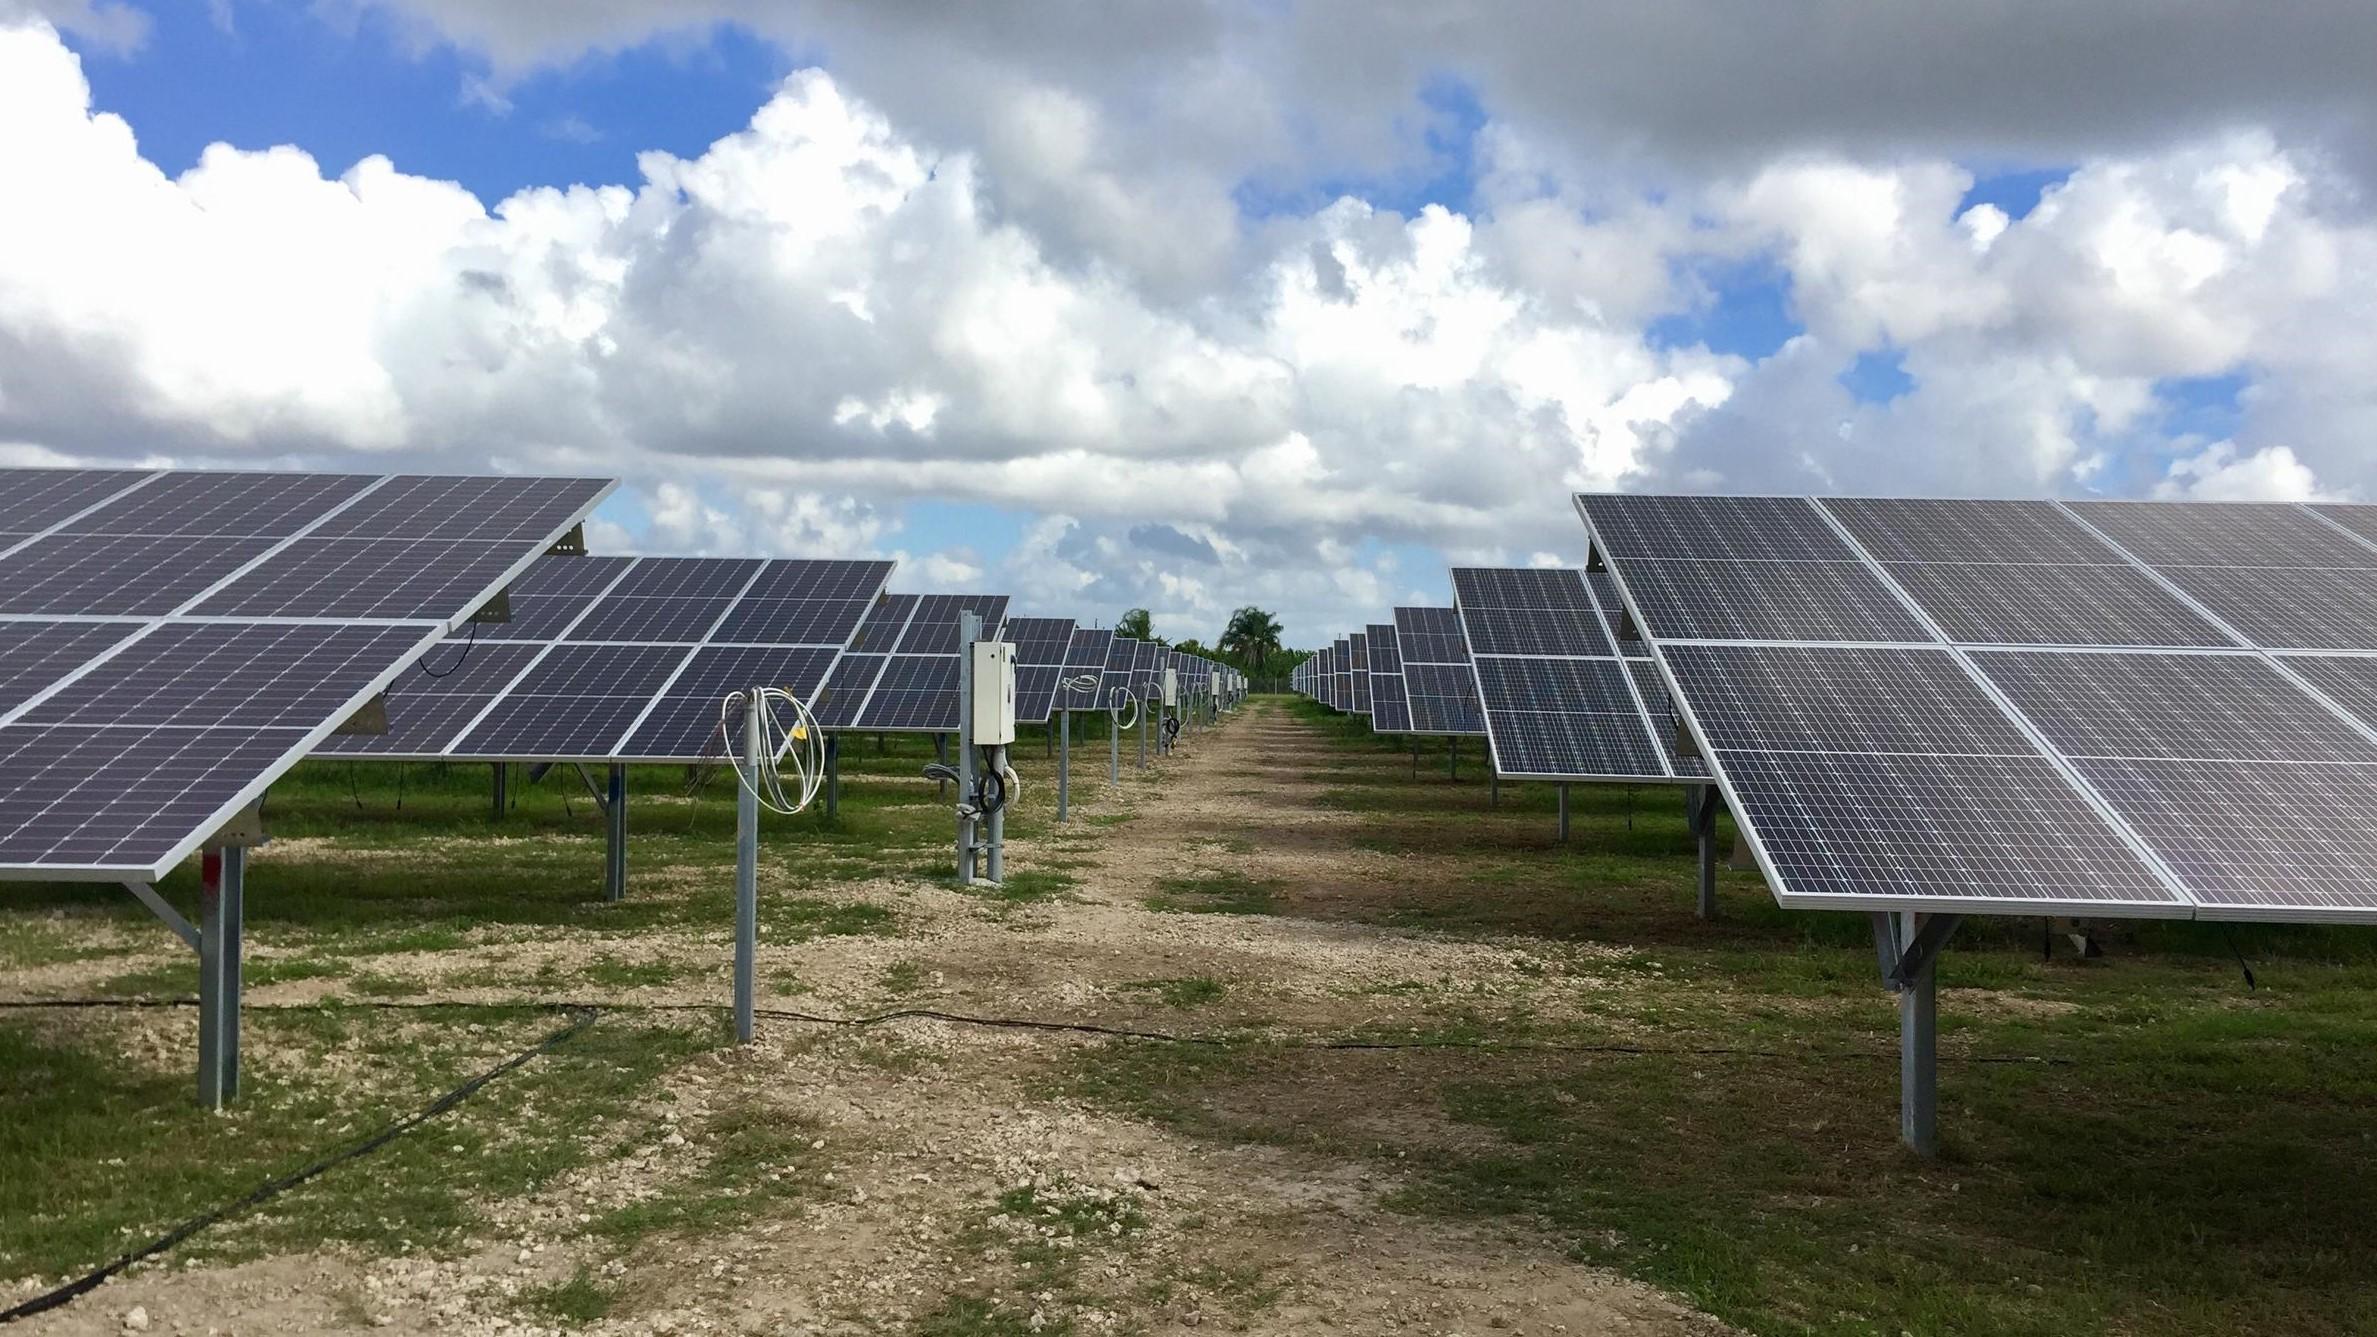 fpl-plans-major-solar-expansion-across-florida-by-2030-wgcu-news